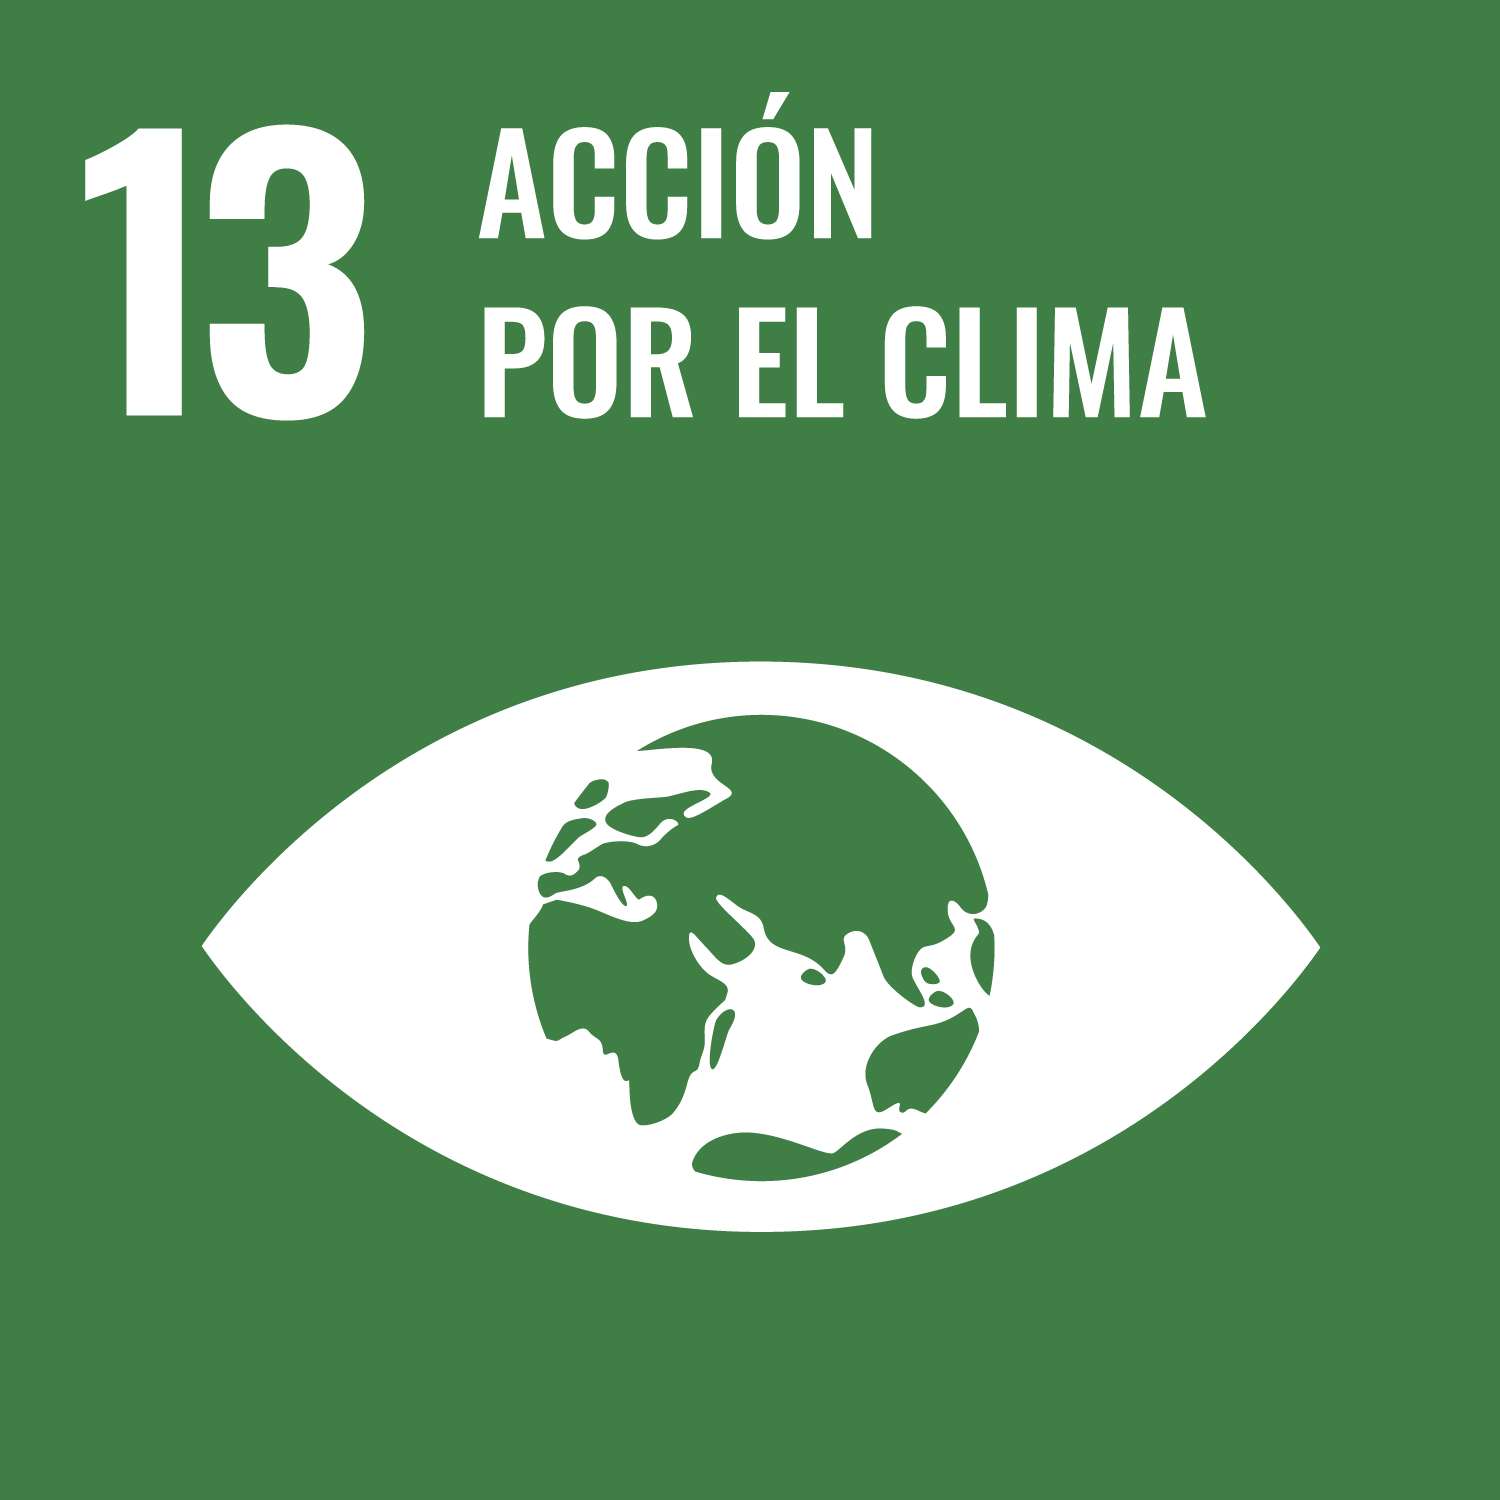 ODS 13</p>
<h5>Acción por el clima</h5>
<p>